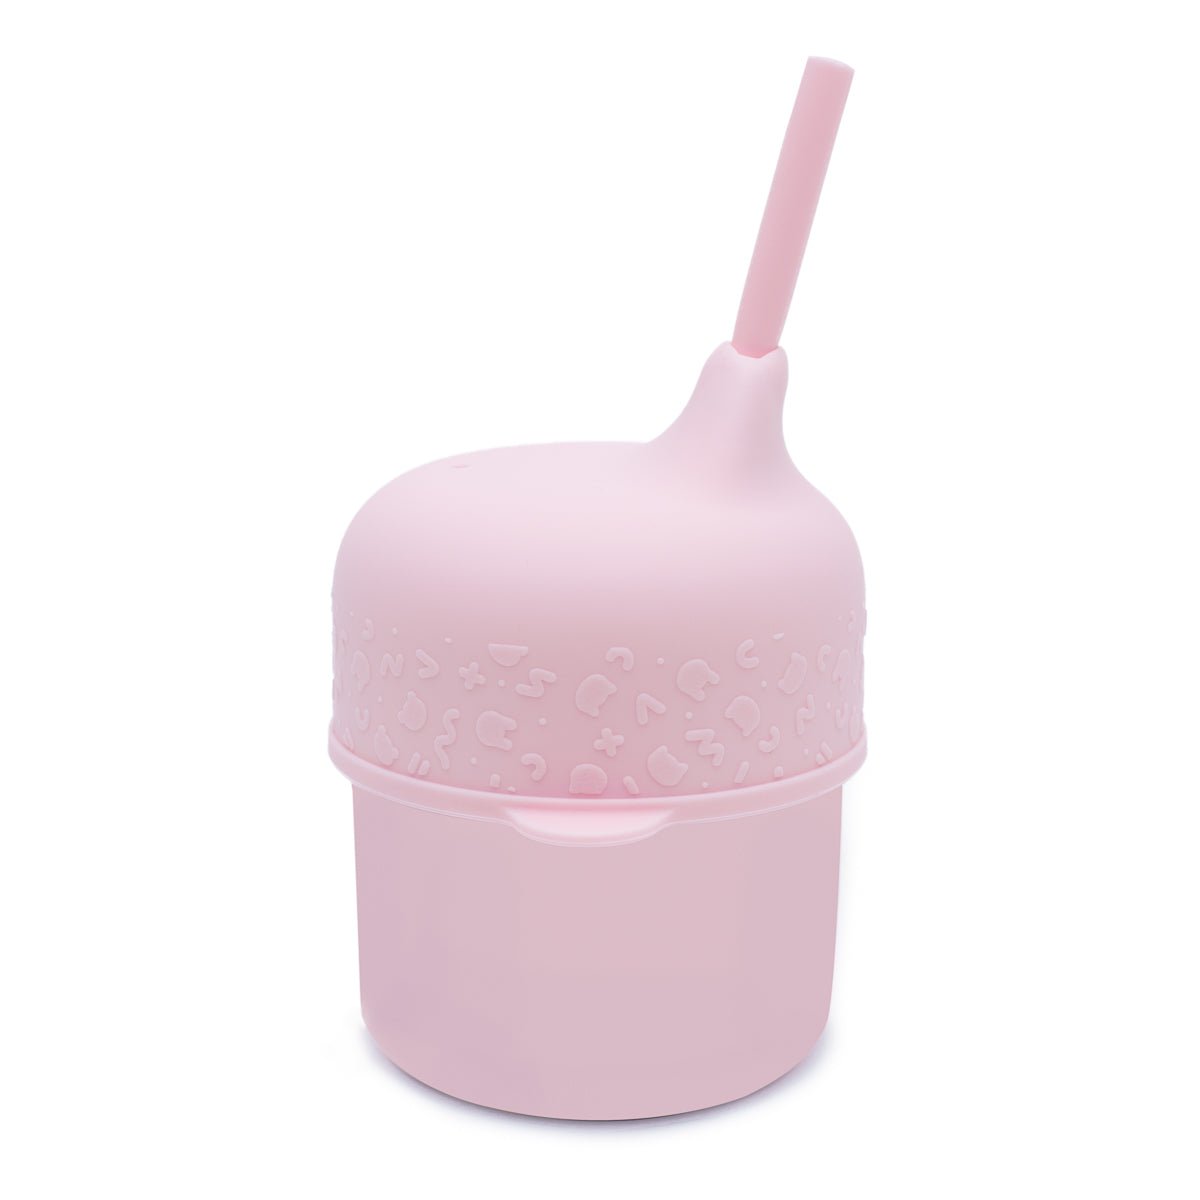 Sippie Cup Set - Powder Pink